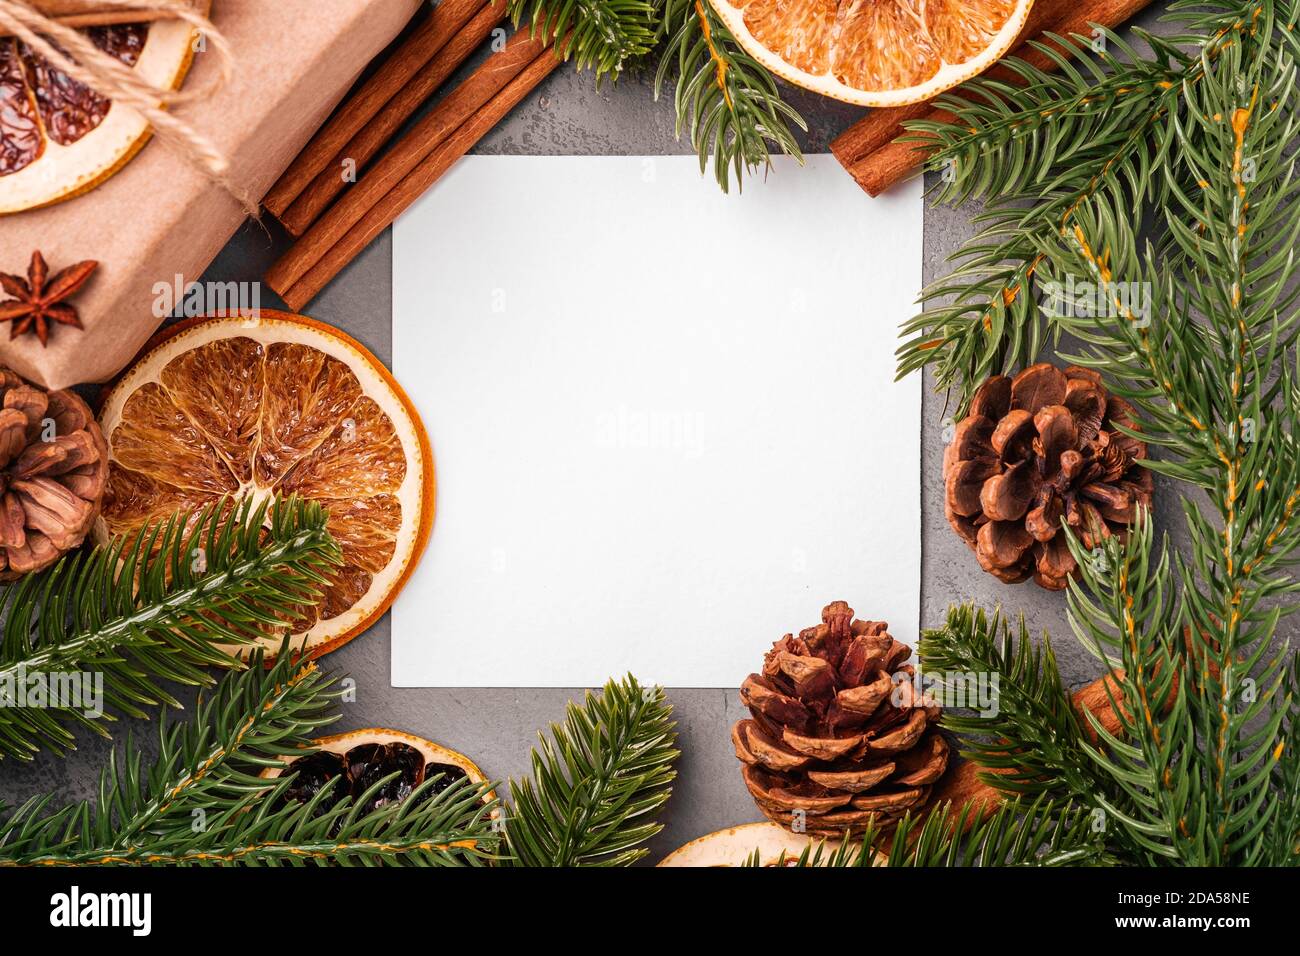 Composizione di Natale mockup. Confezione regalo, cannella, anice, frutta secca, coni di pino e decorazioni con aghi di abete su sfondo grigio Foto Stock